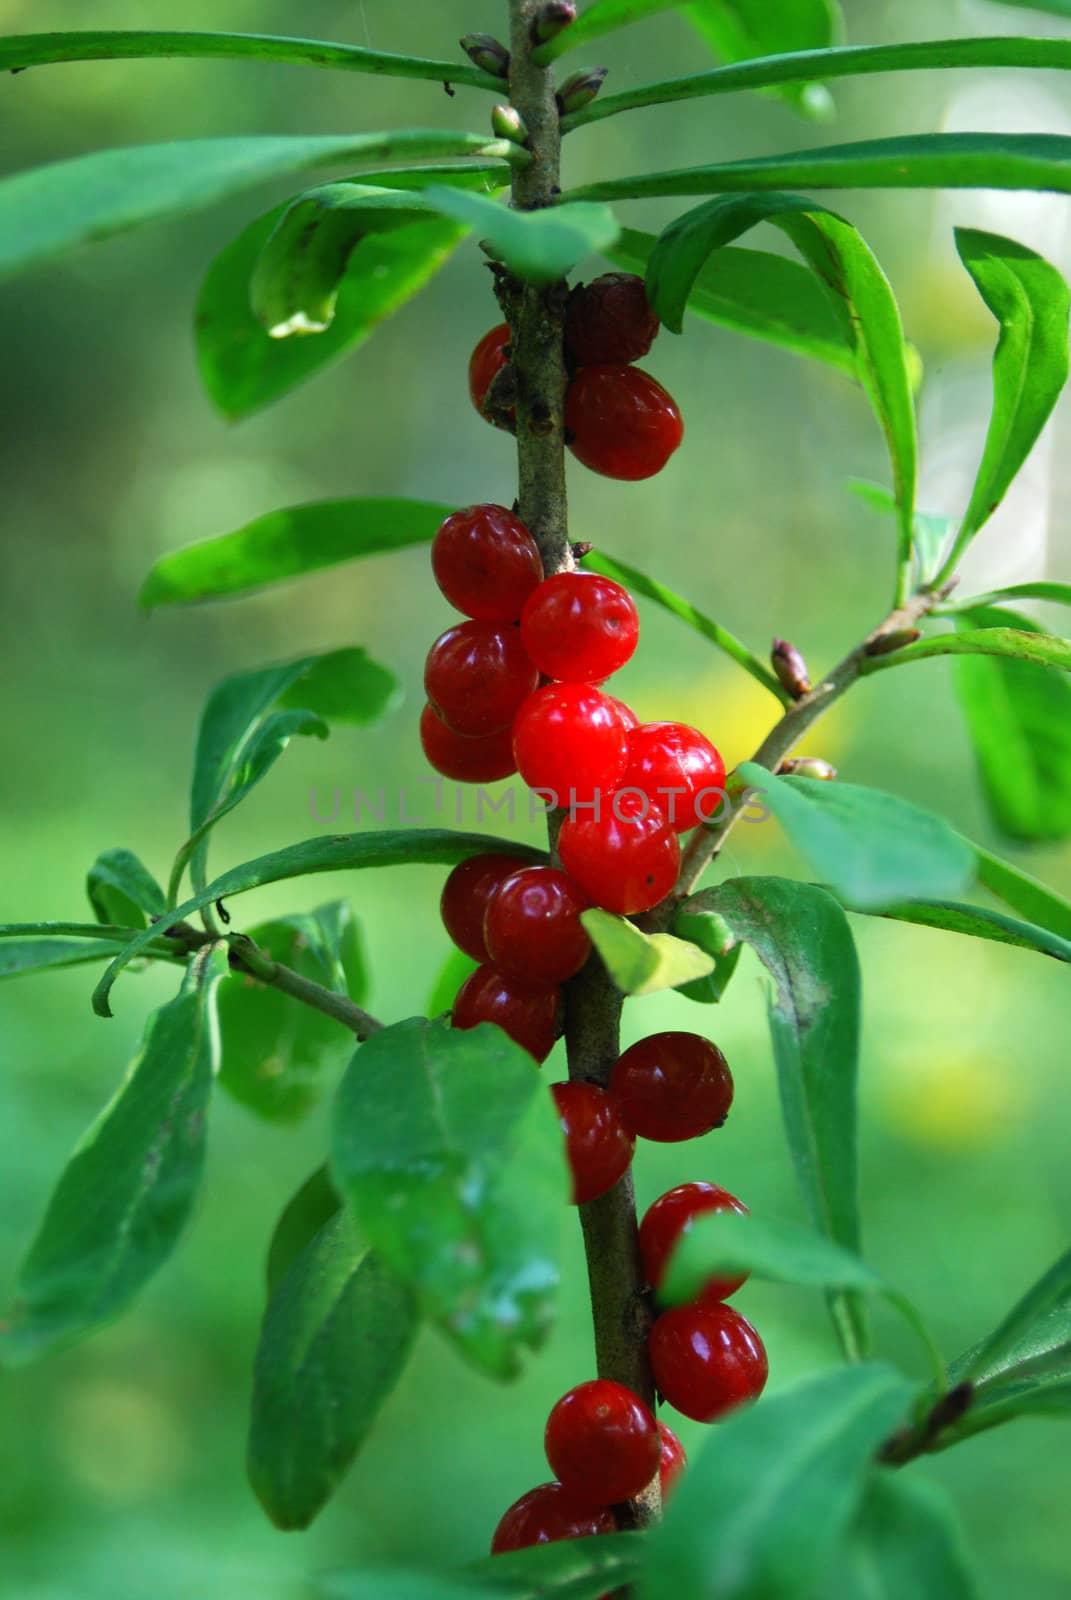 
venomous plant (bush) with ruddy berries